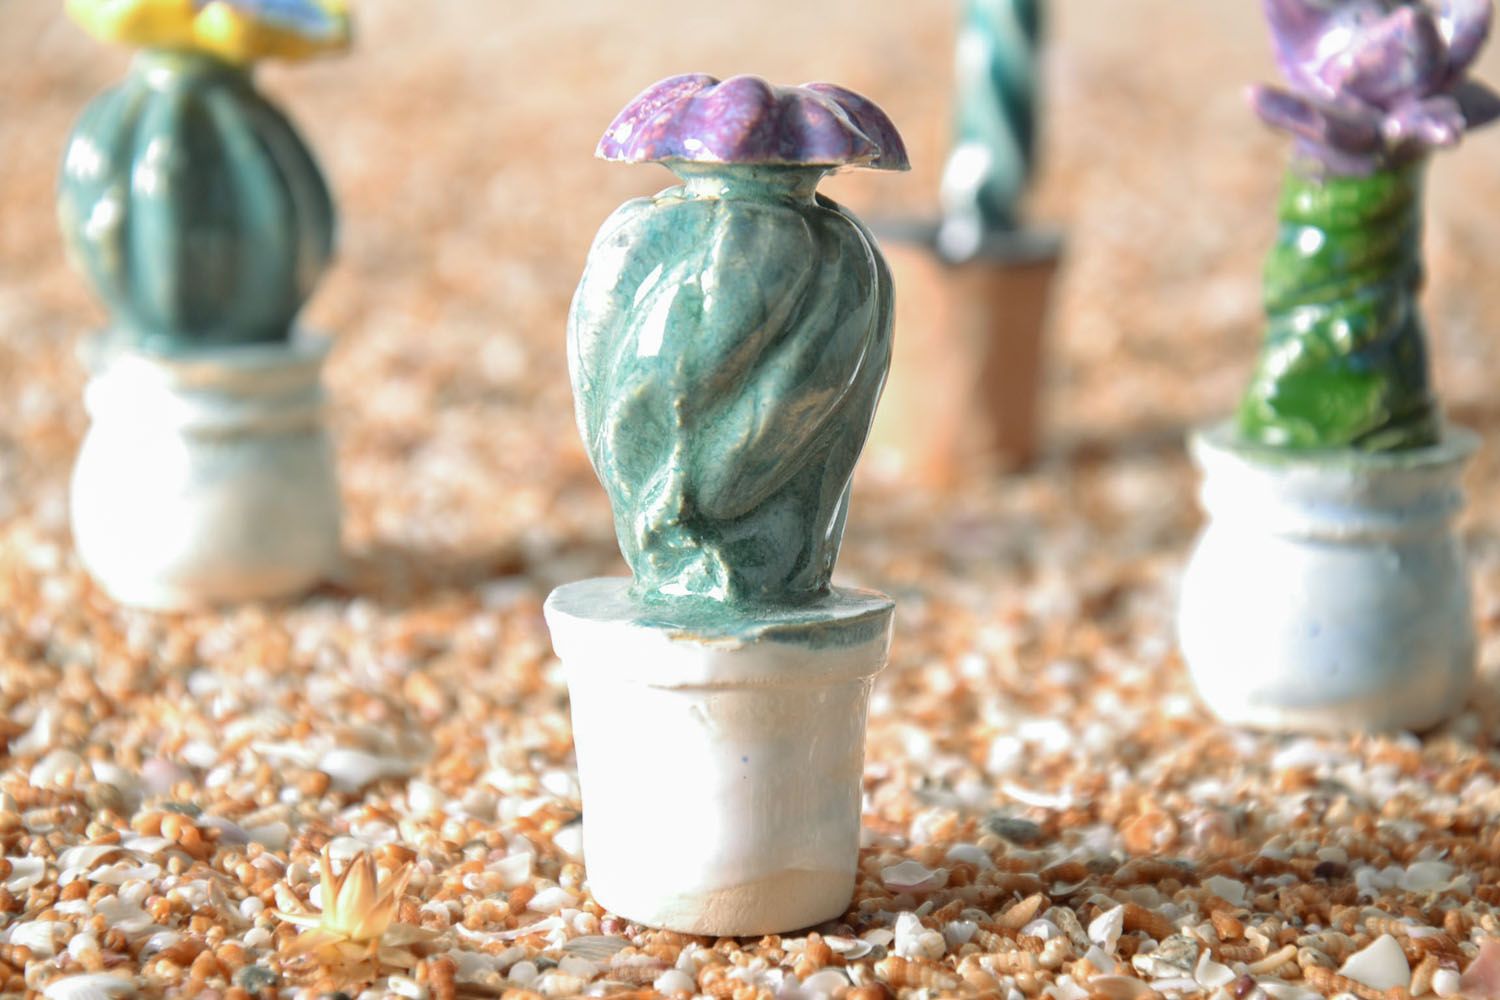 Estatueta de argila artesanal em forma de um cacto florescente  foto 1